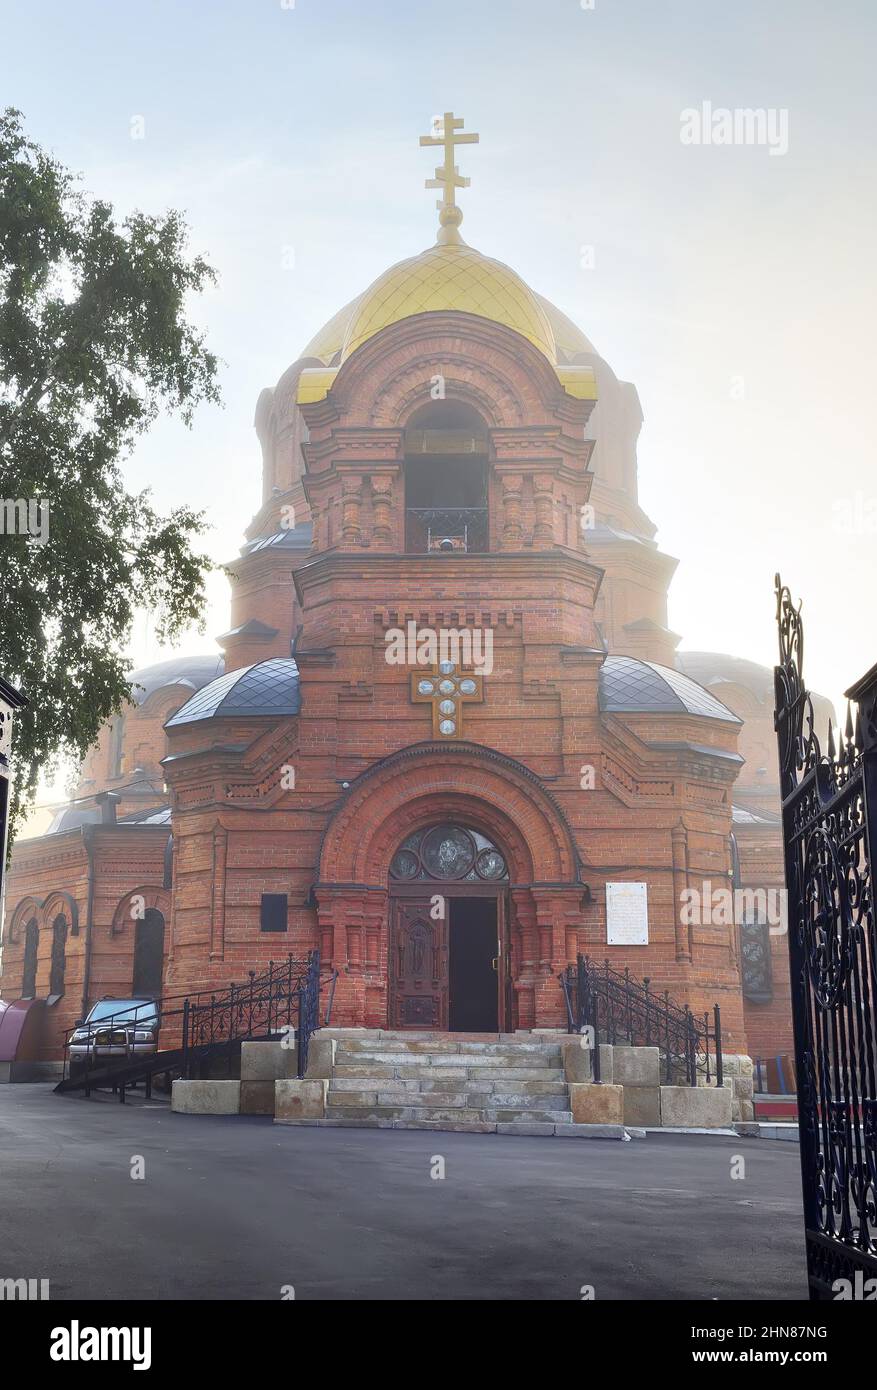 Una chiesa ortodossa con una cupola dorata in stile architettonico russo-bizantino nella nebbia mattutina. Siberia, Russia Foto Stock